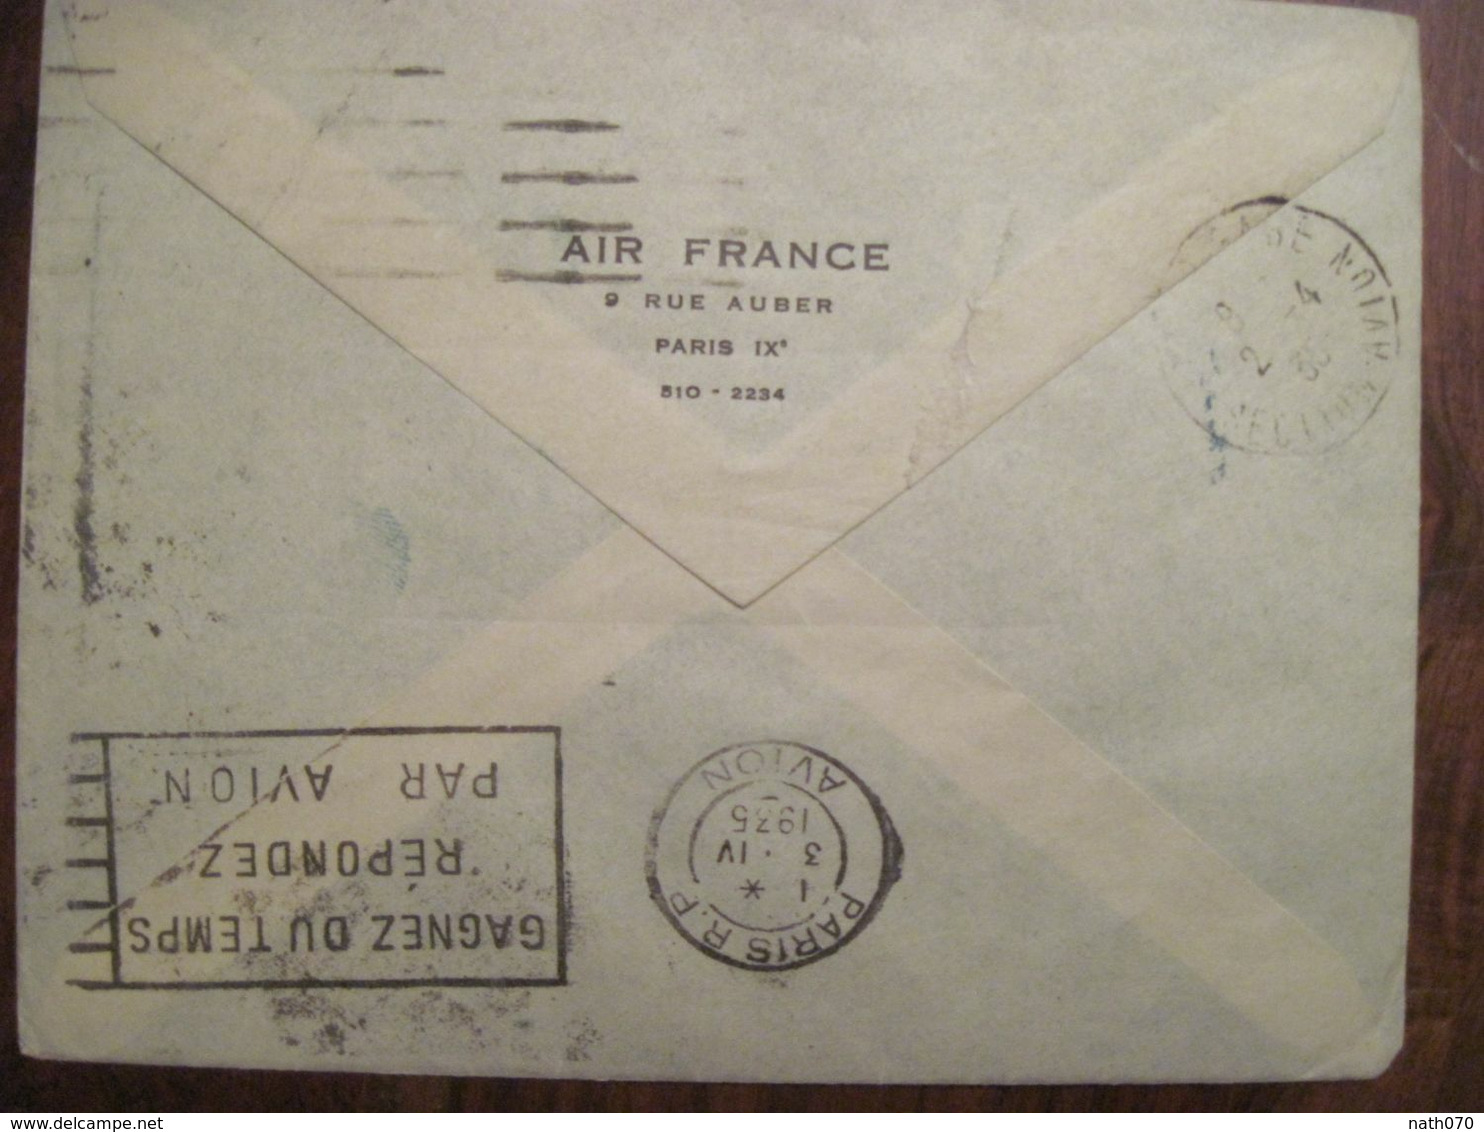 France 1935 Enveloppe Cover Air Mail Par Avion 1er Vol Paris Alger Ajaccio Tunis Dans La Journée - Briefe U. Dokumente